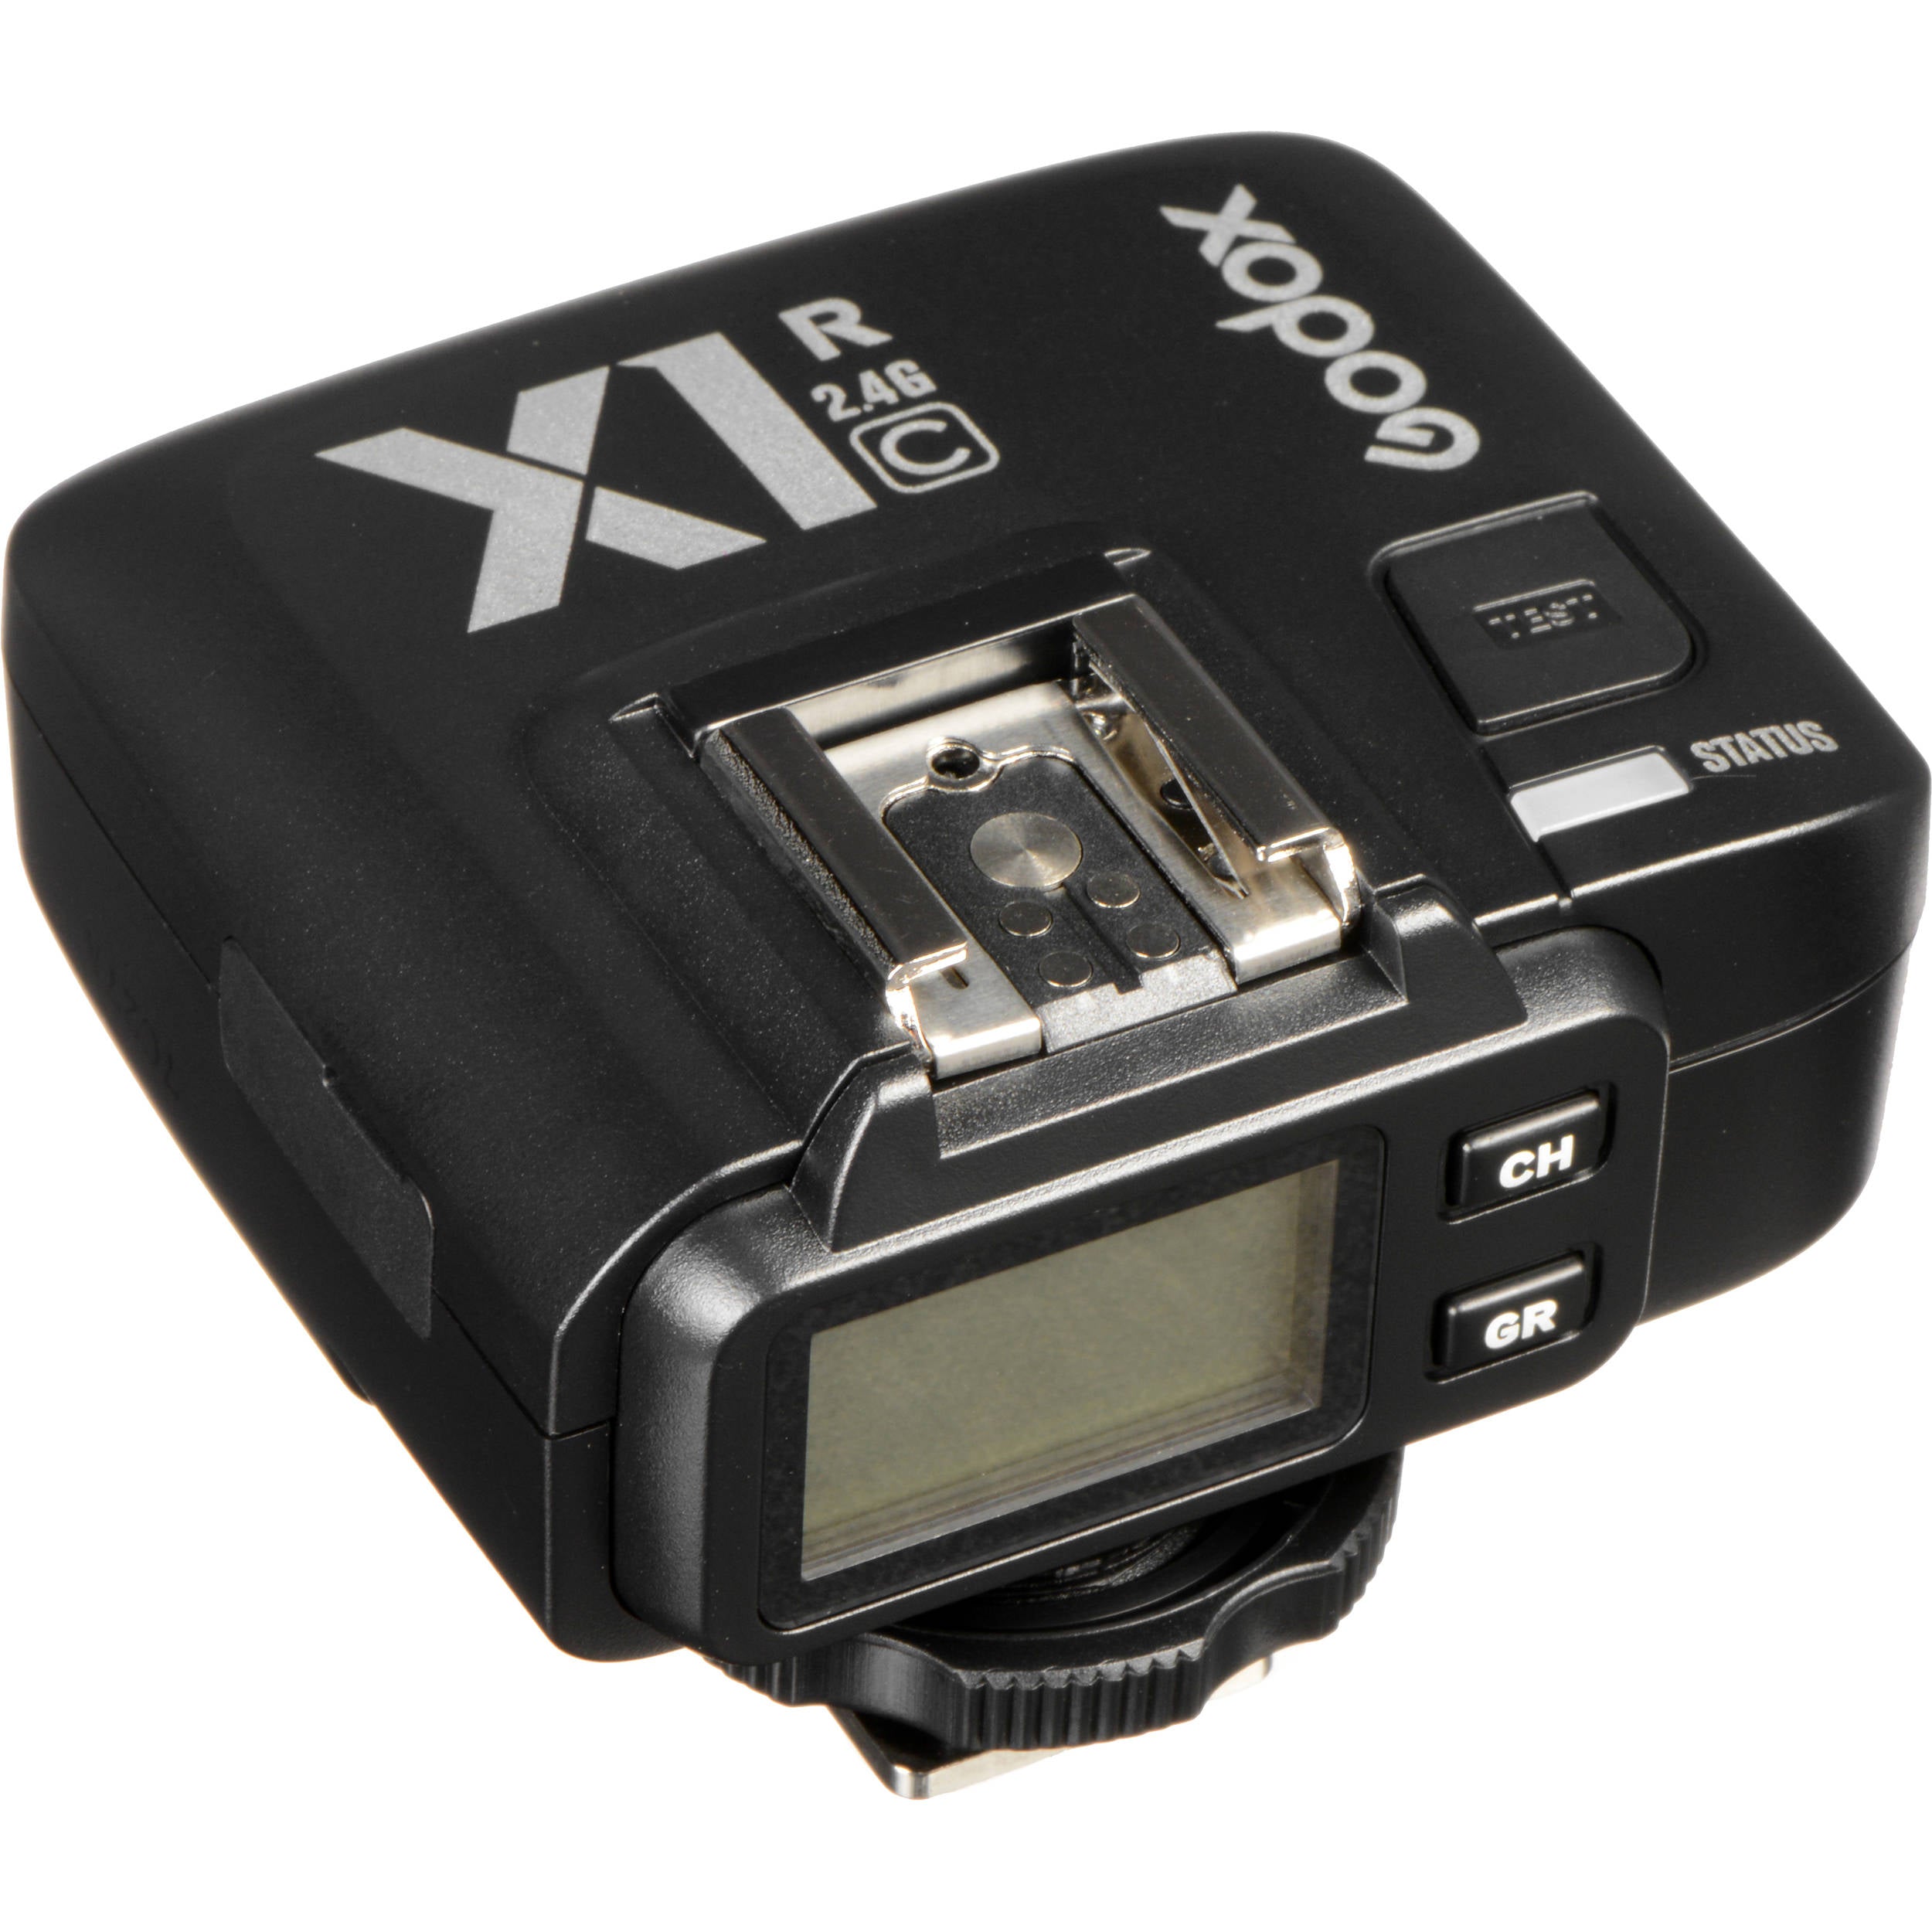 Godox X1R-C TTL Wireless Flash Trigger Receiver for Canon Godox Wireless Flash Transmitter/Receiver